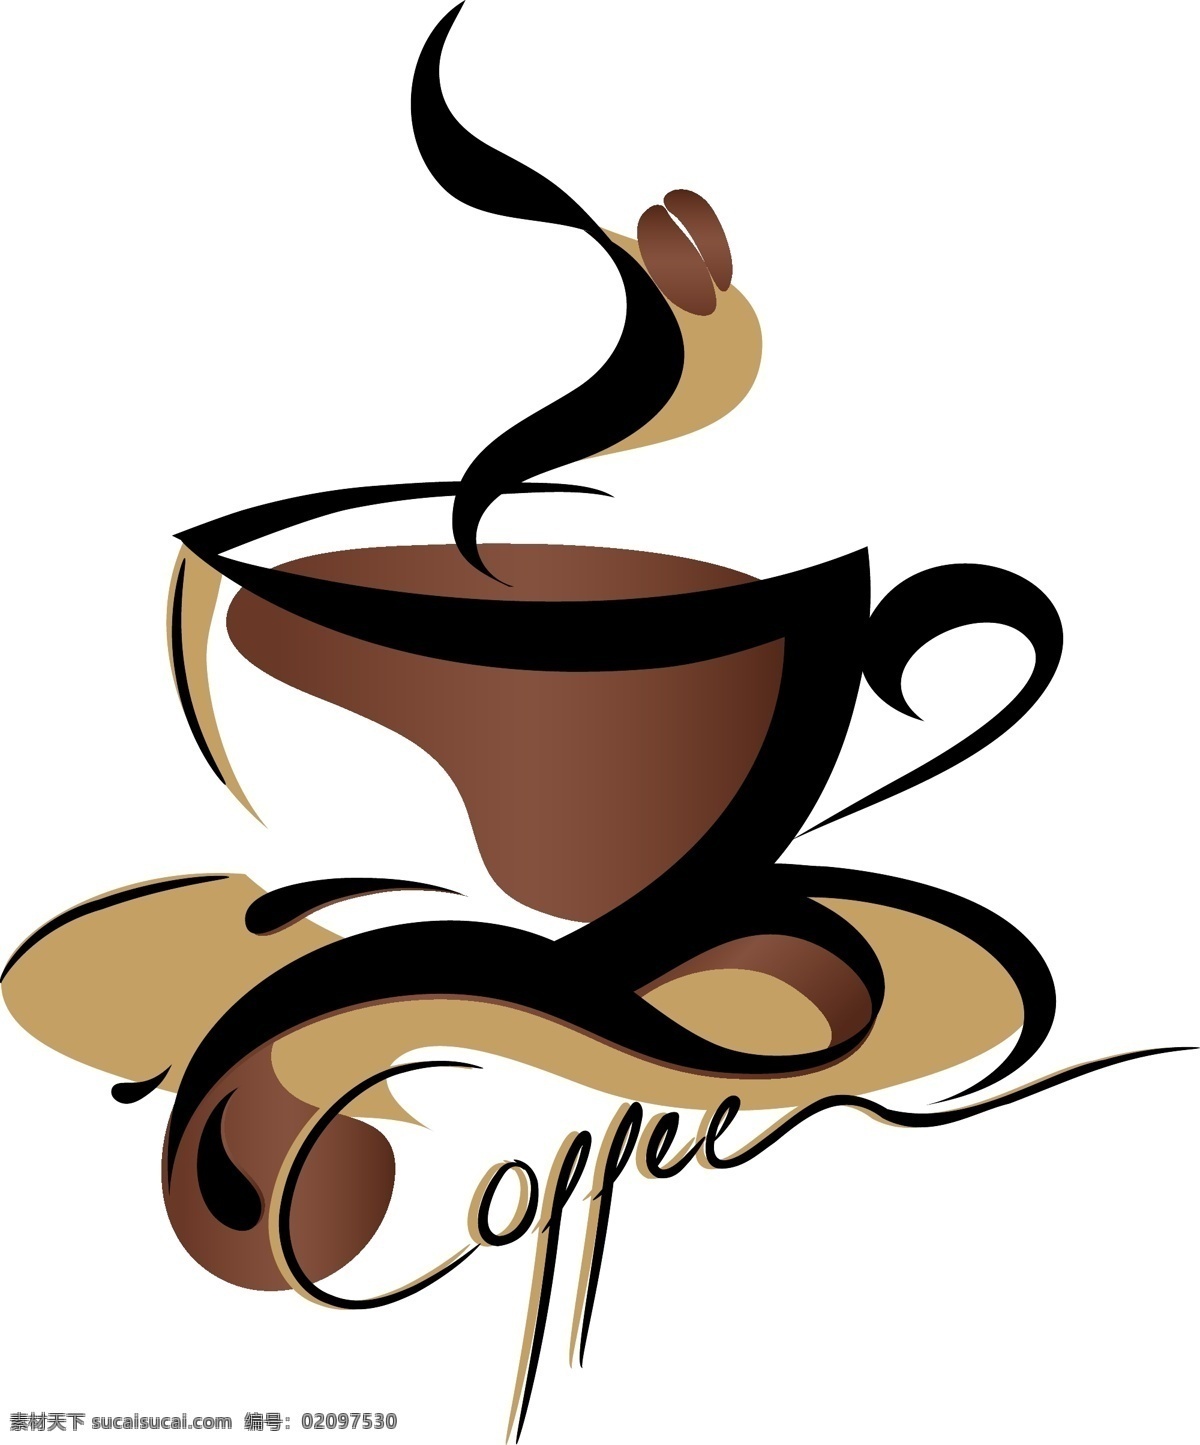 咖啡 图标 标志设计 标志 咖啡标志 咖啡杯 咖啡图标 矢量图标 杯子 卡通图案 矢量素材 餐饮 饮料 底纹背景 底纹边框 白色